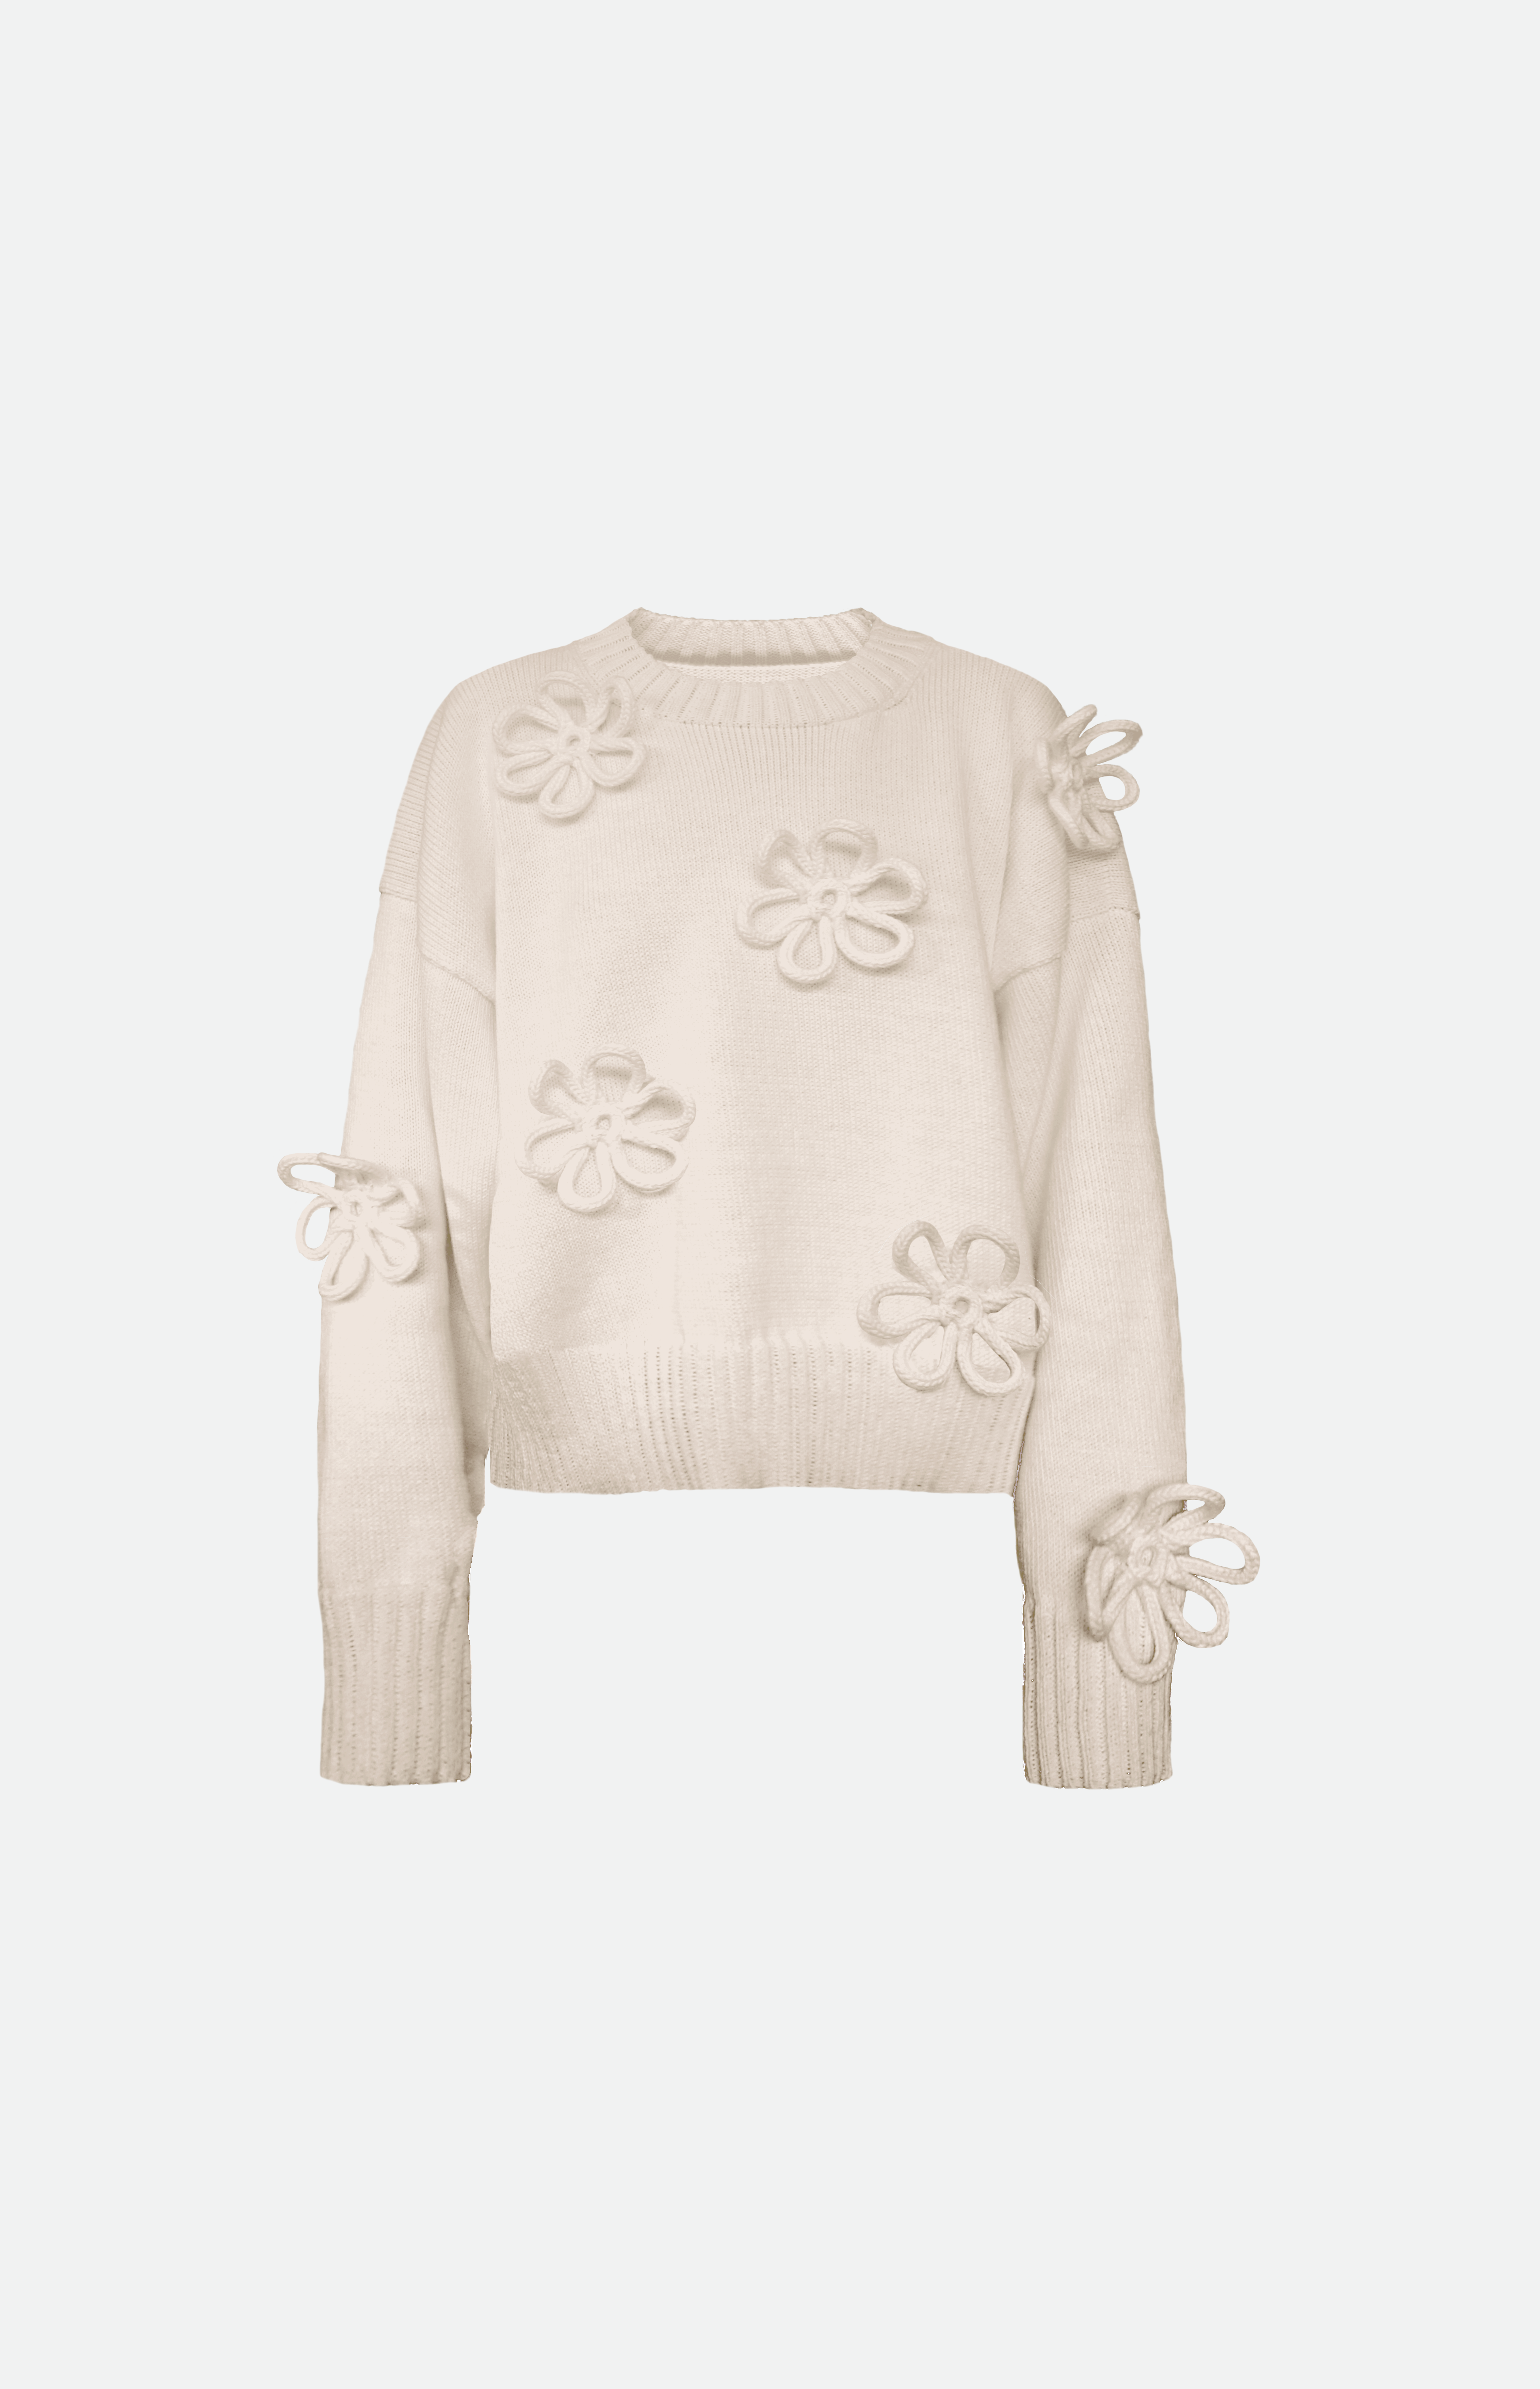 Flower sweater van Studio Selles